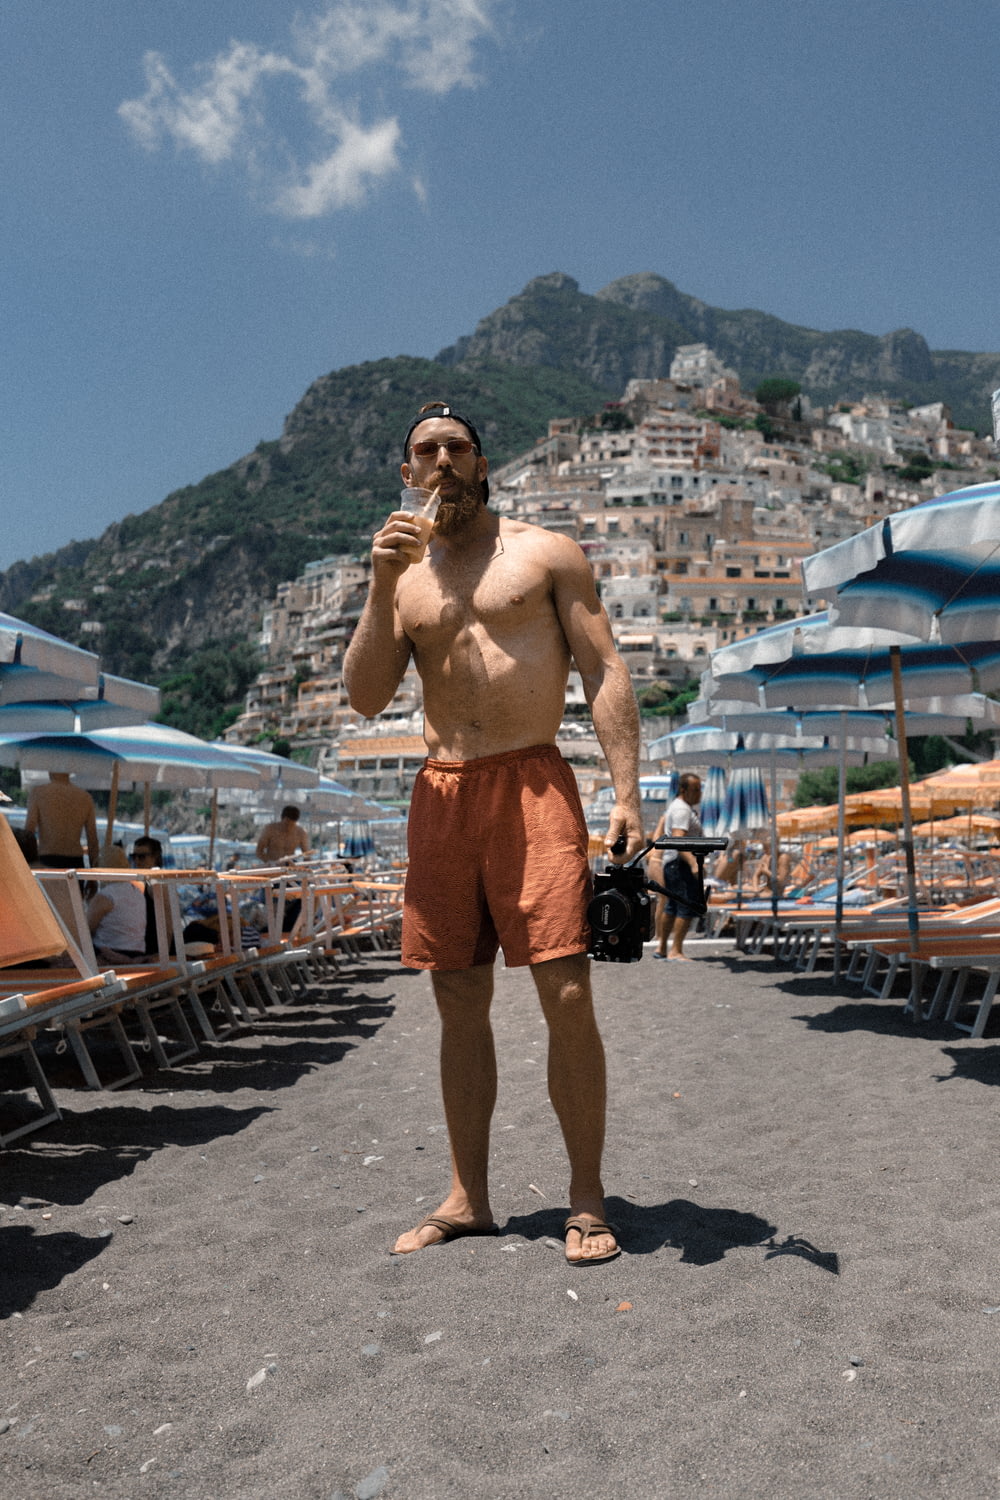 オレンジ色のショートパンツを履いた男がビーチの砂の上に立ち、カップで飲む